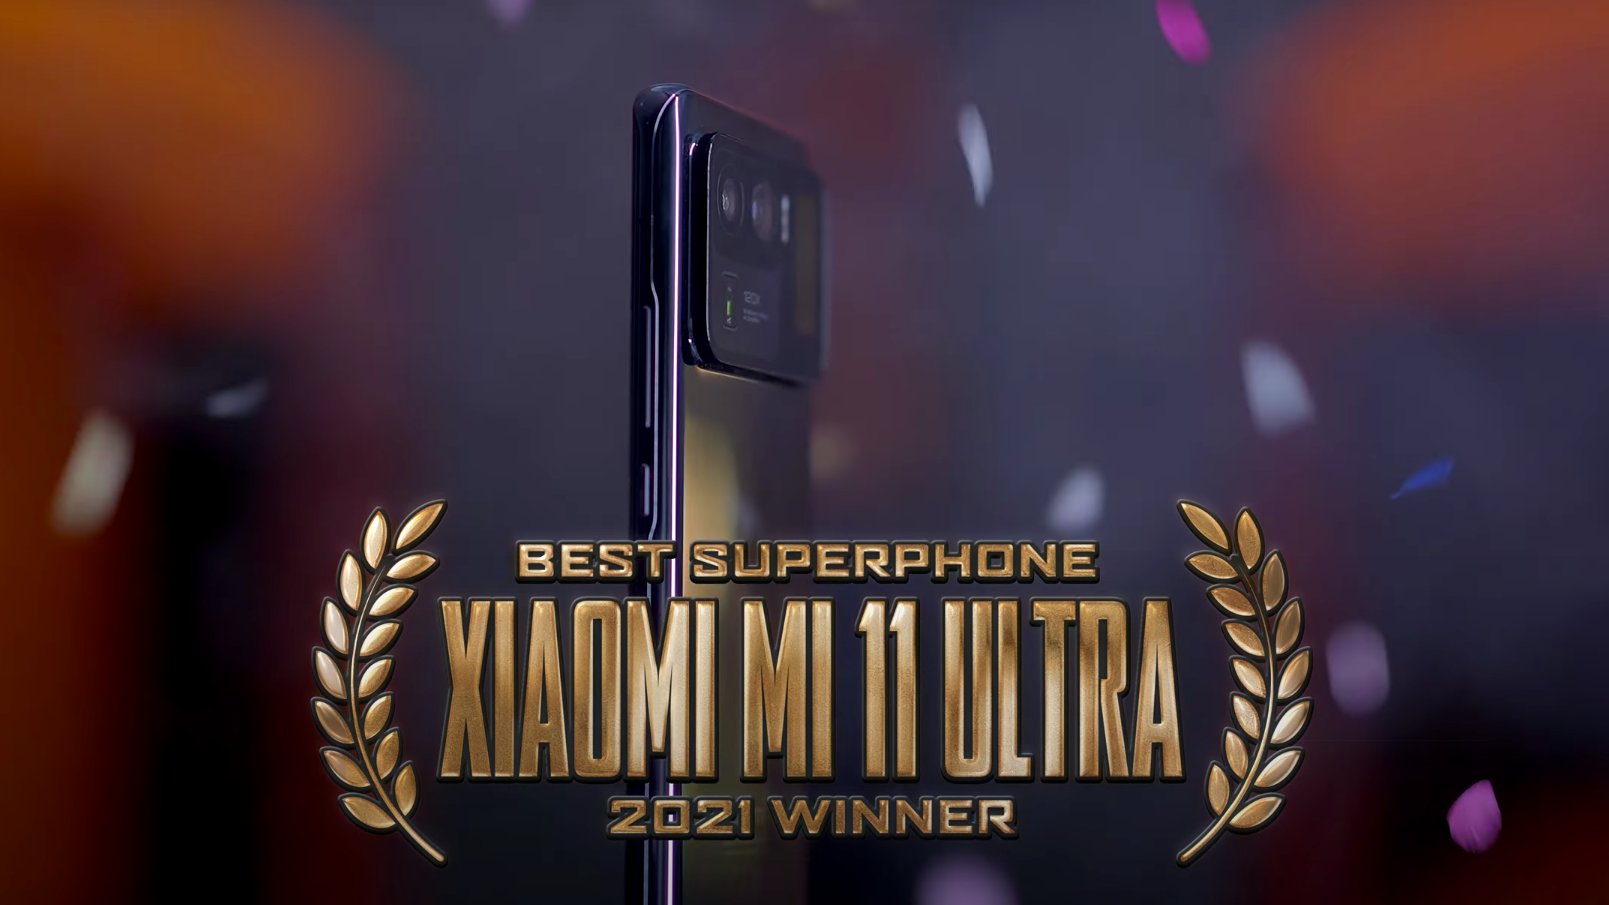 Xiaomi Mi 11 Ultra superphone 2021